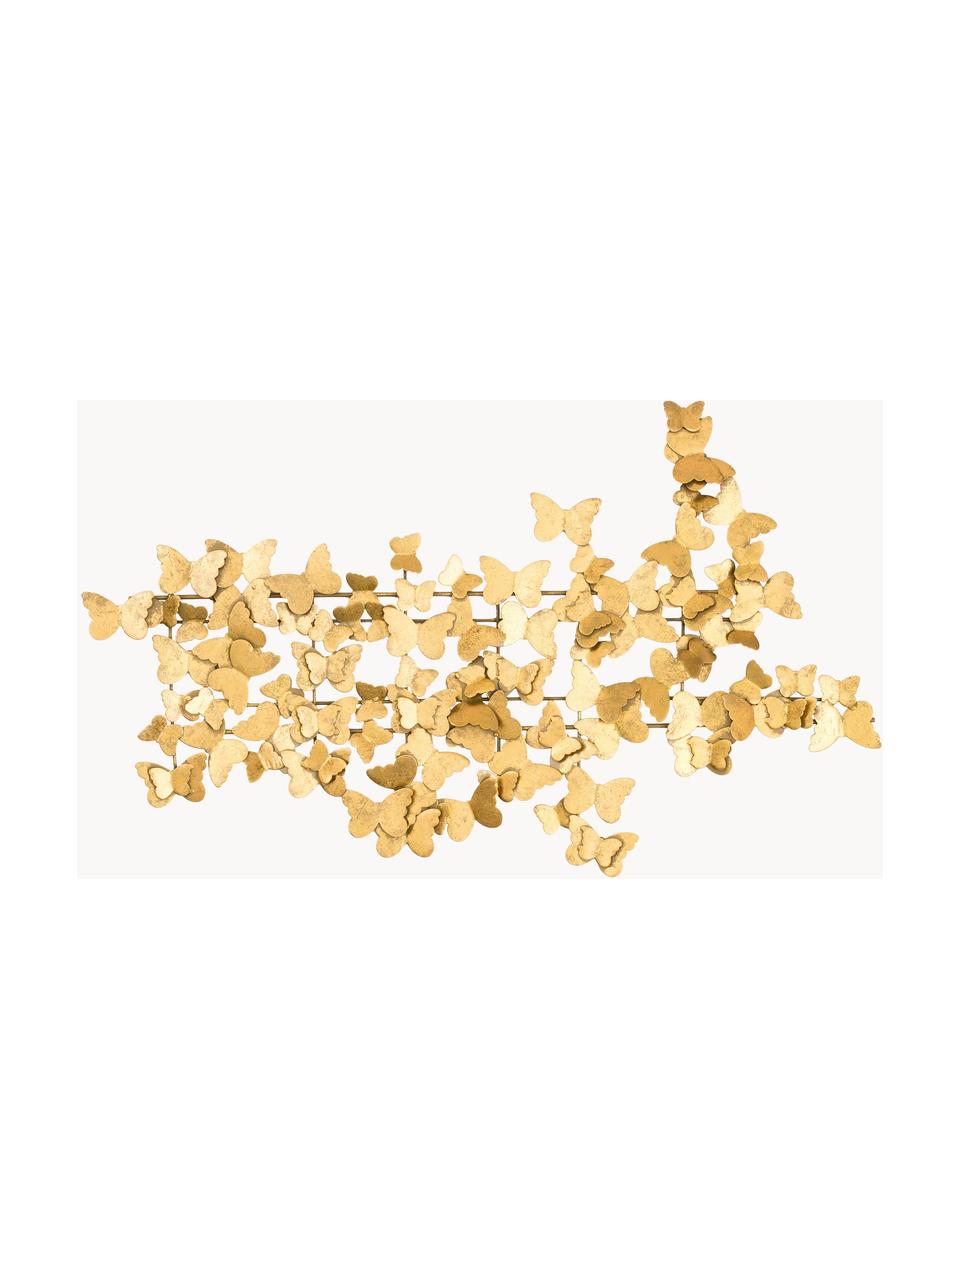 Décoration murale en métal Butterfly, Métal, Couleur dorée, larg. 104 cm, haut. 62 cm